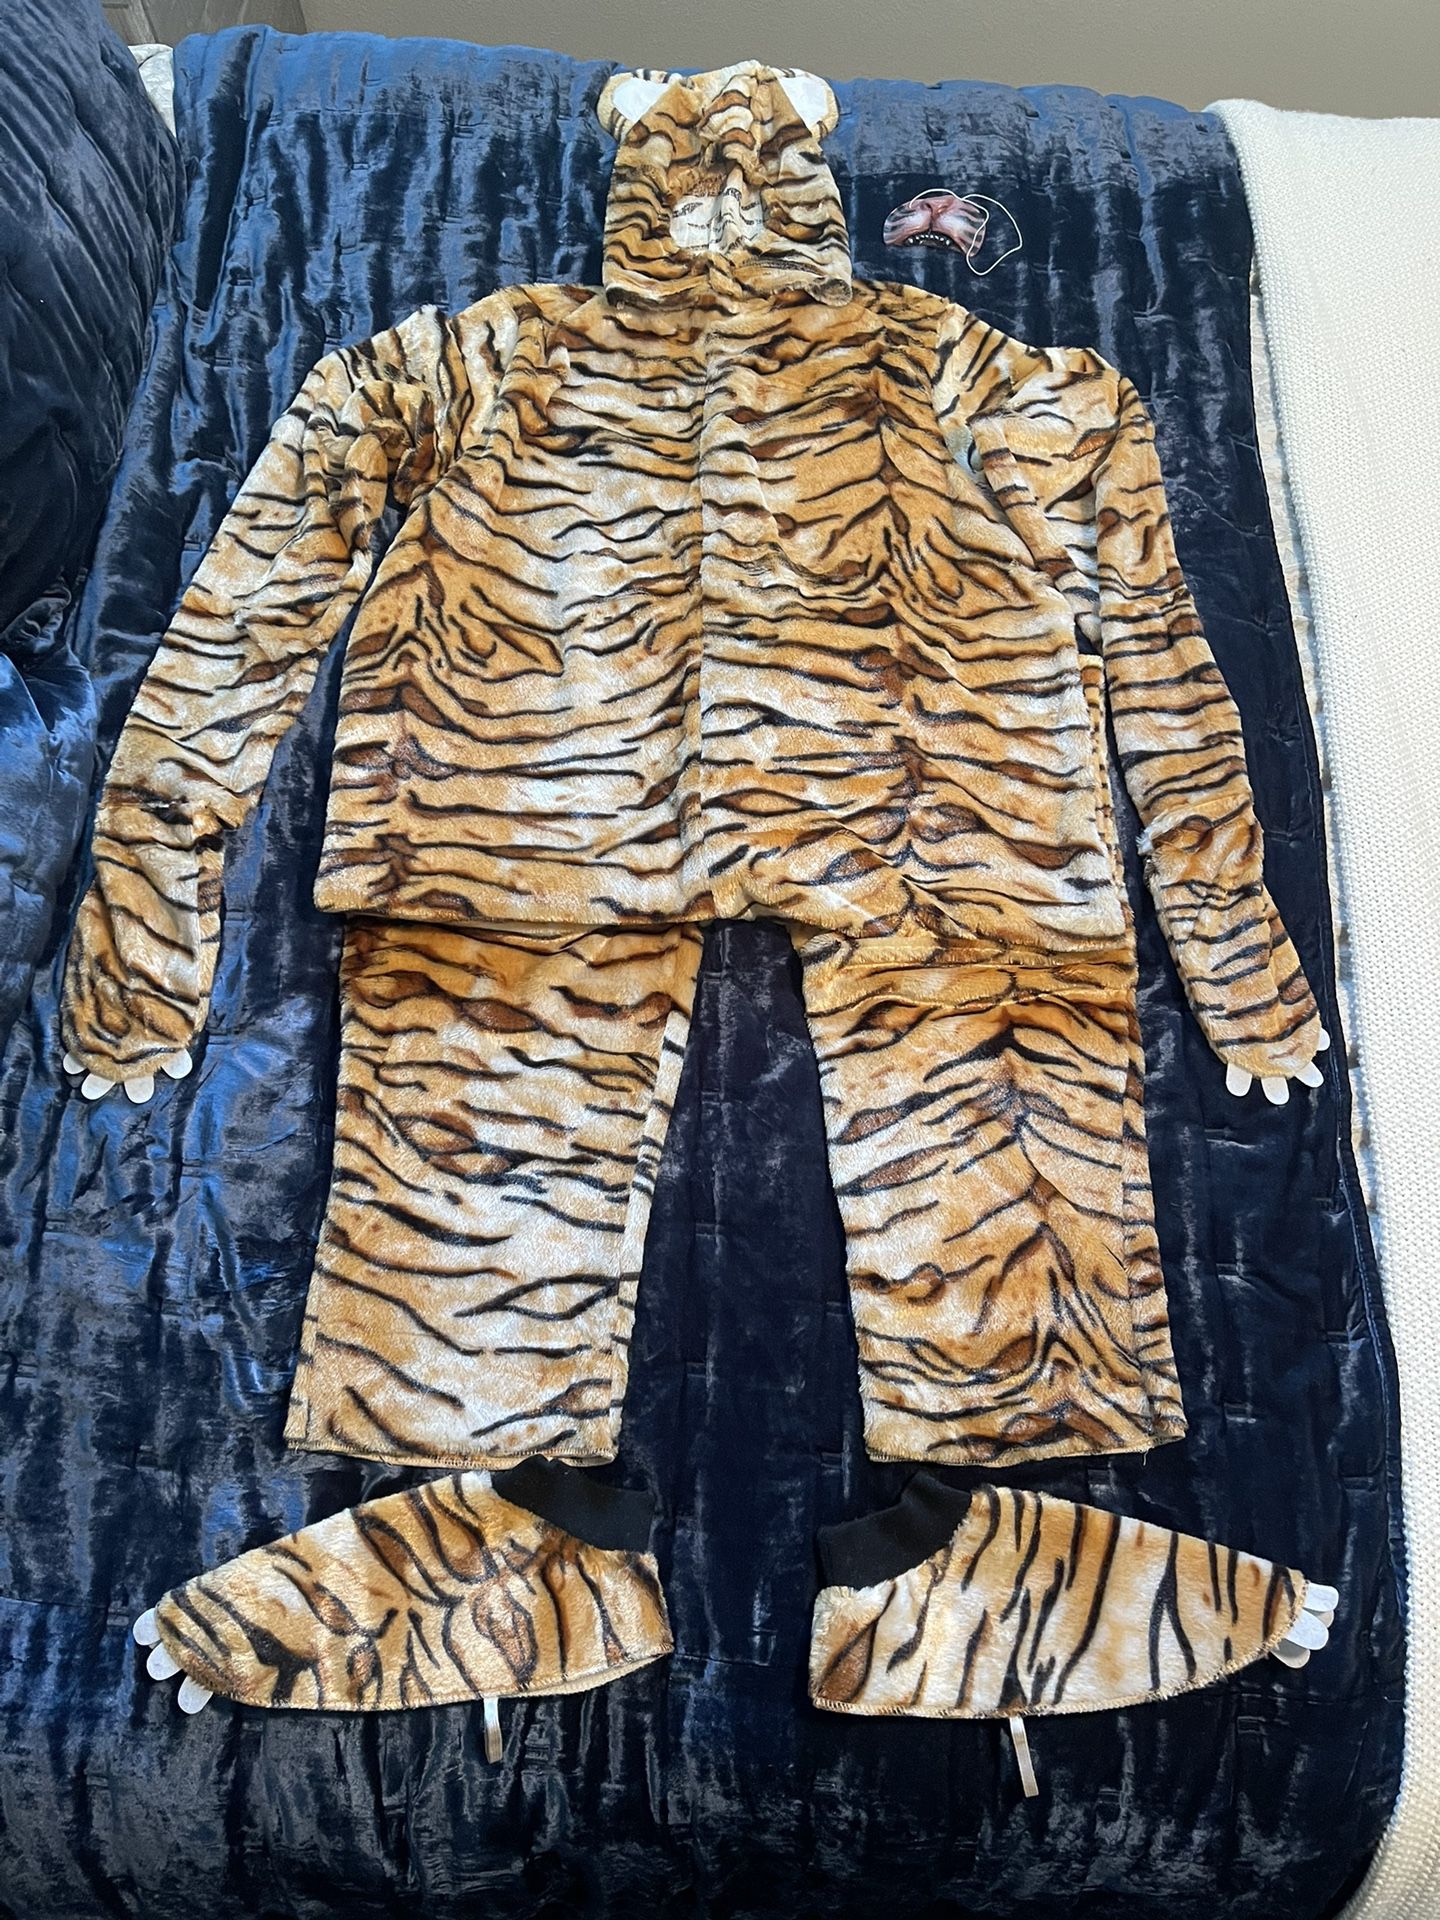 Adult Tiger Costume Set